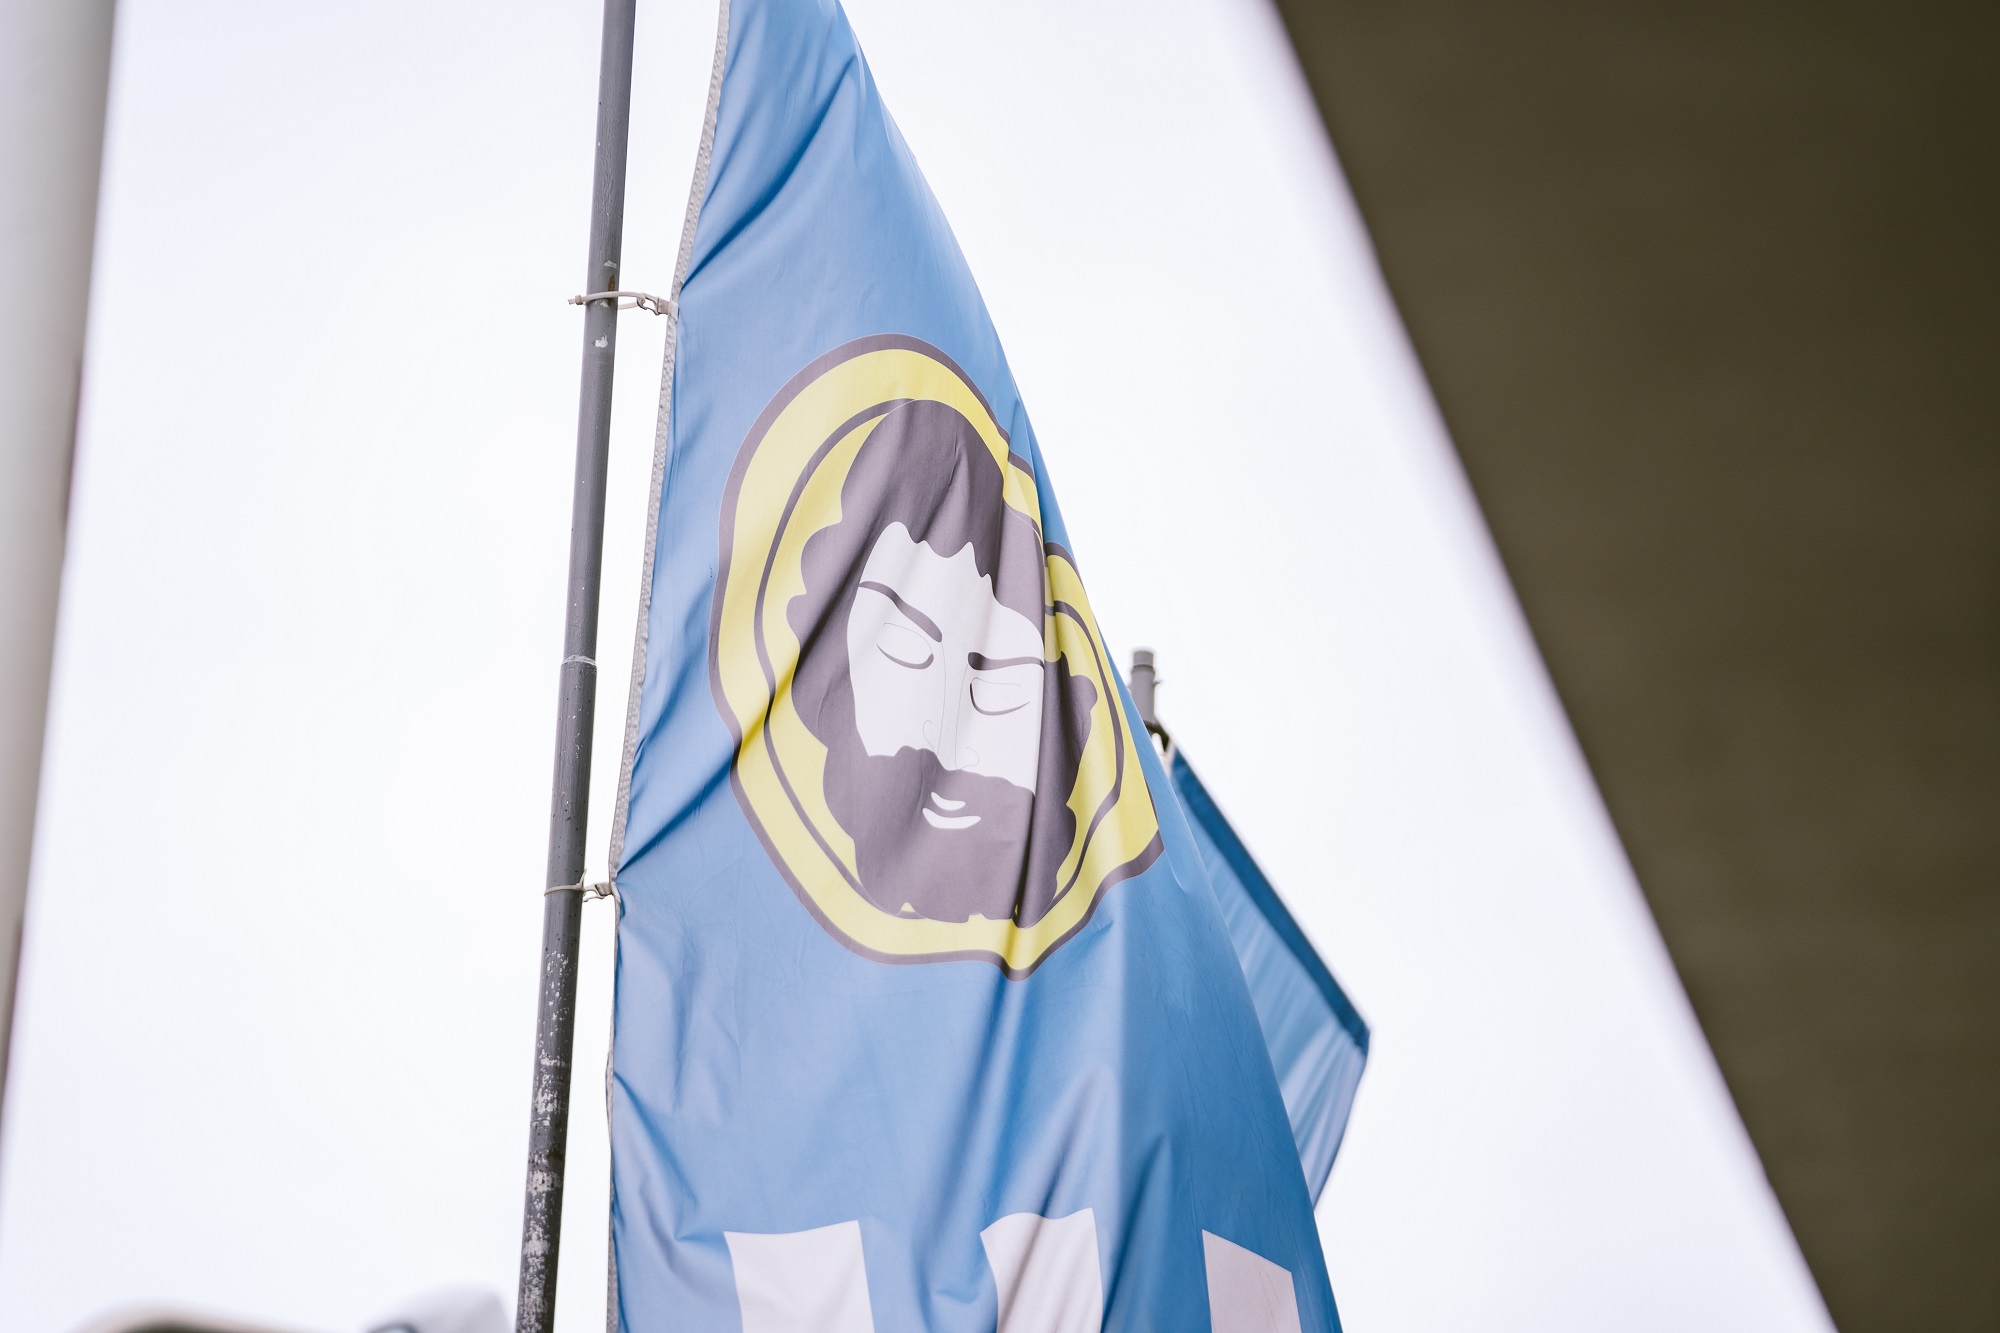 Flaga z herbem gminy Brzozów, przedstawia w polu błękitnym ściętą głowę św. Jana Chrzciciela na żółtej (złotej) misie.